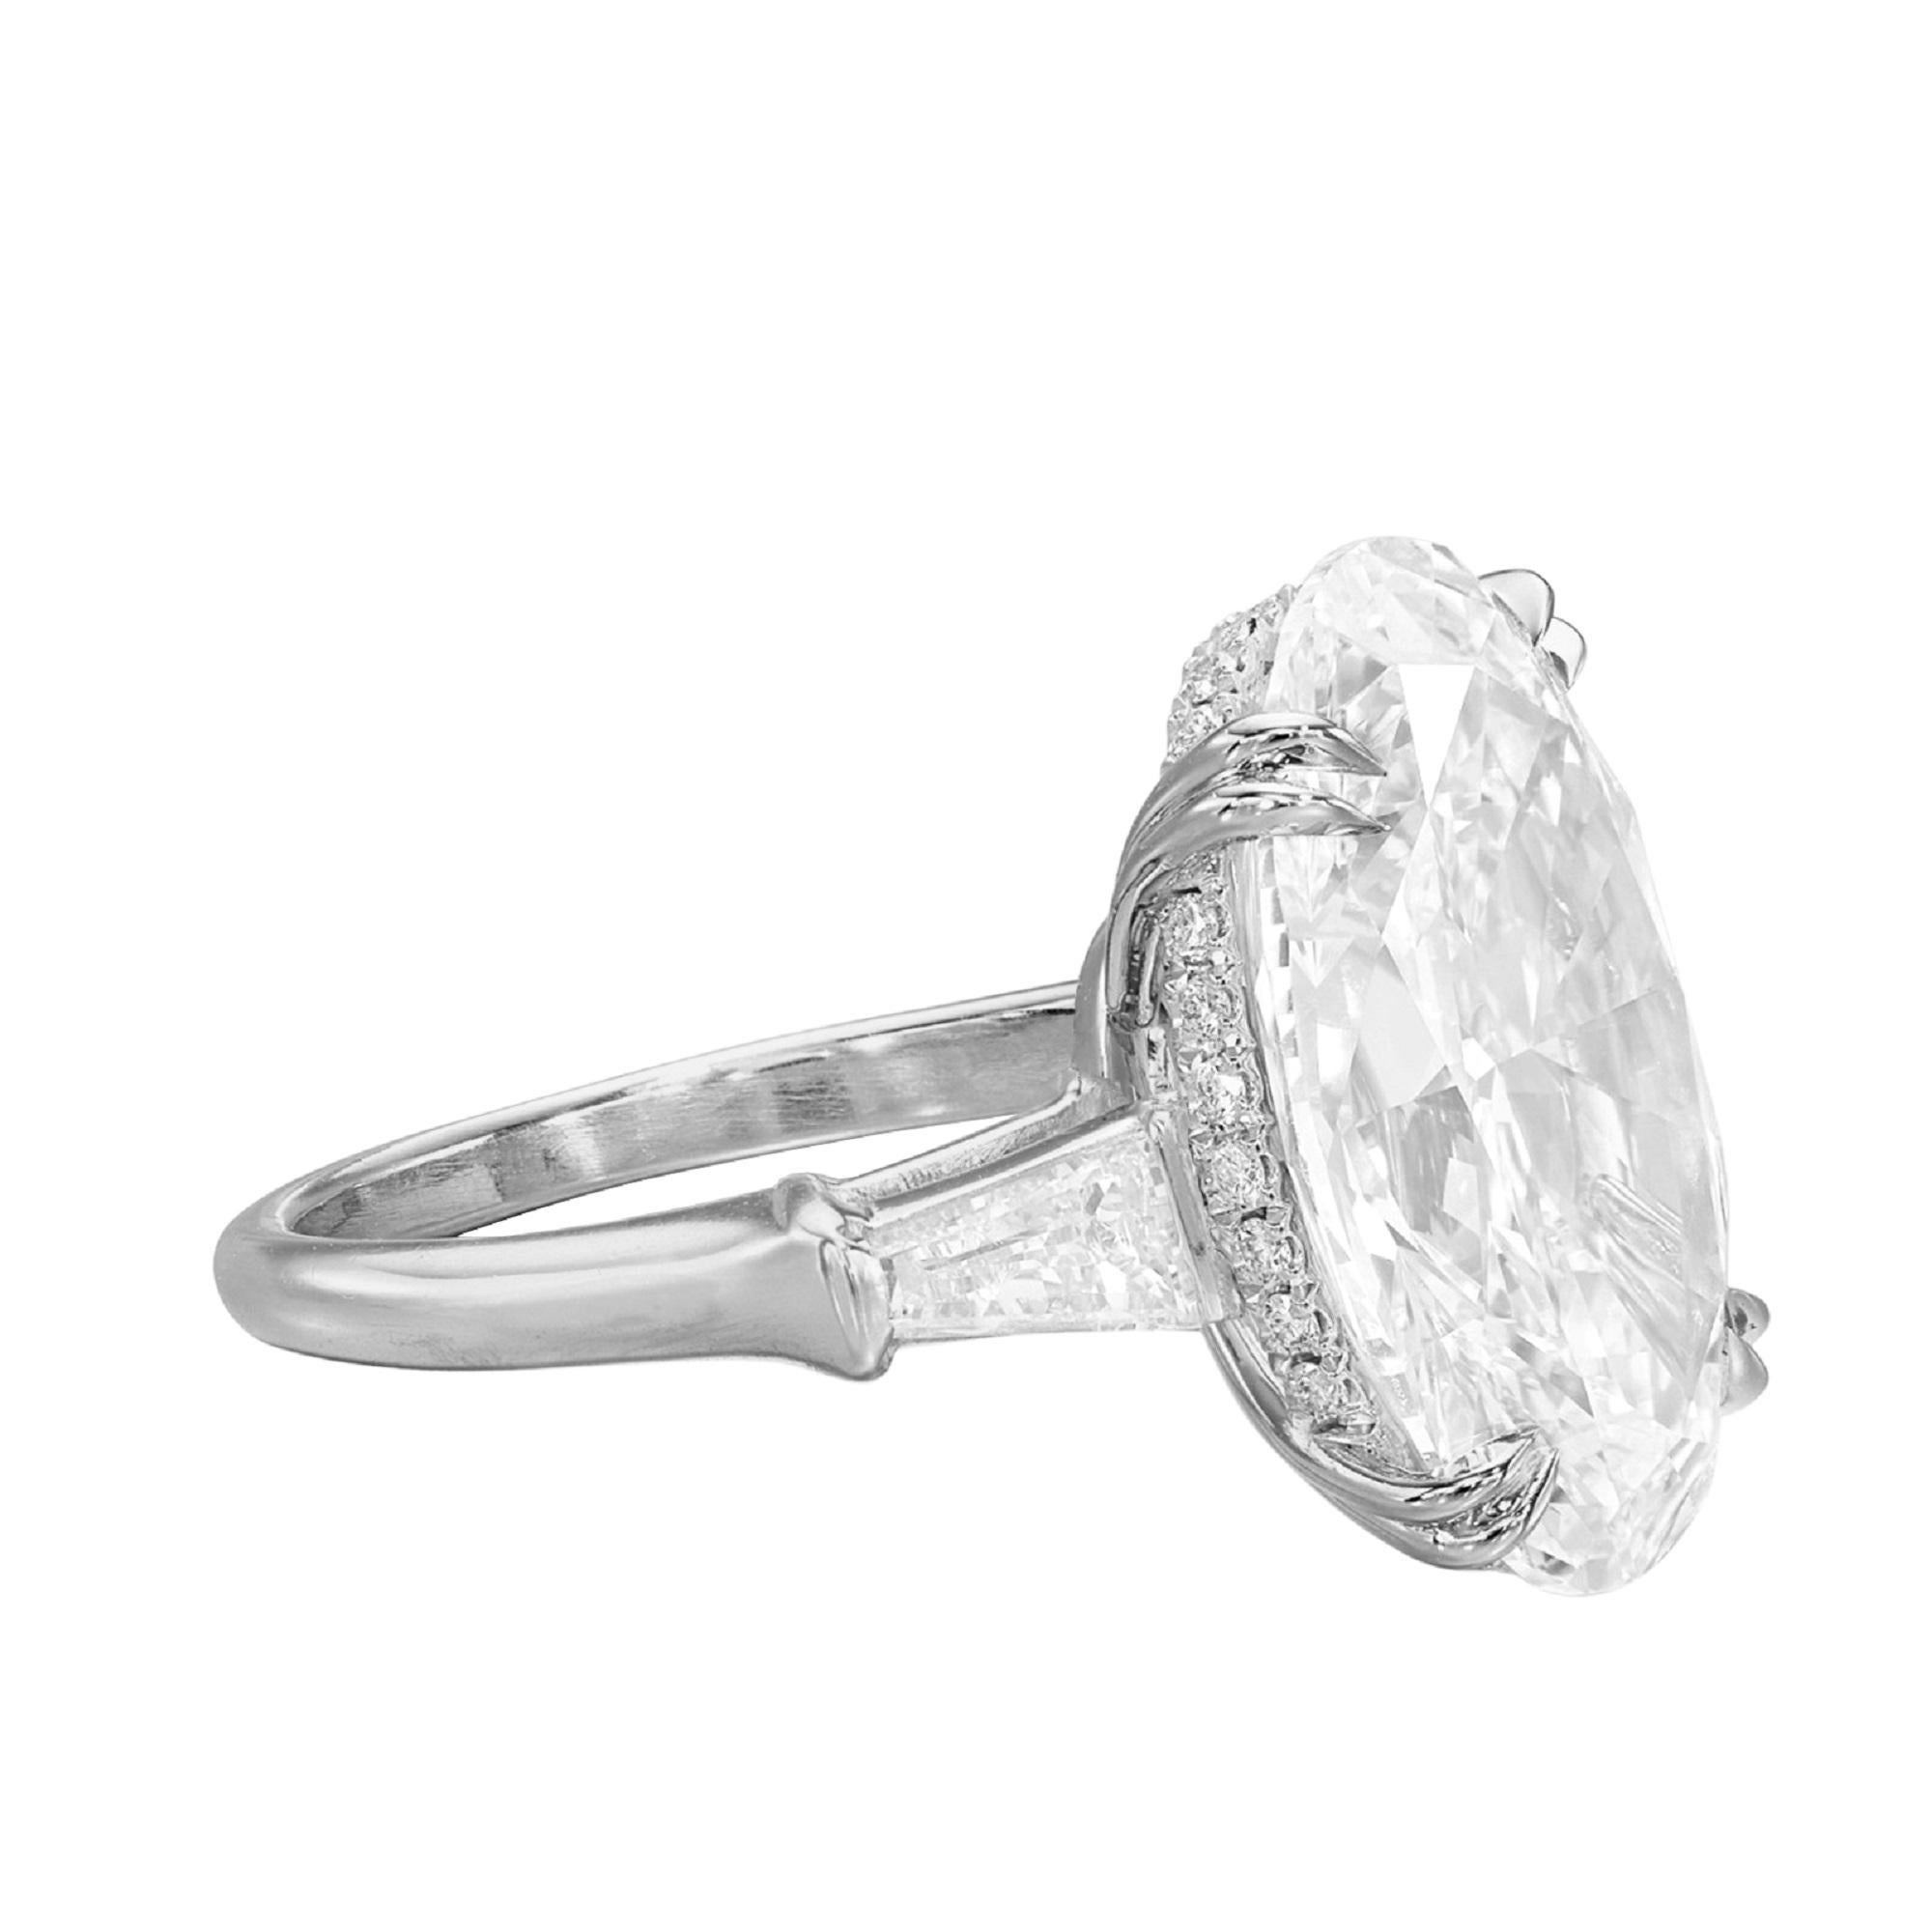 4ct oval diamond ring